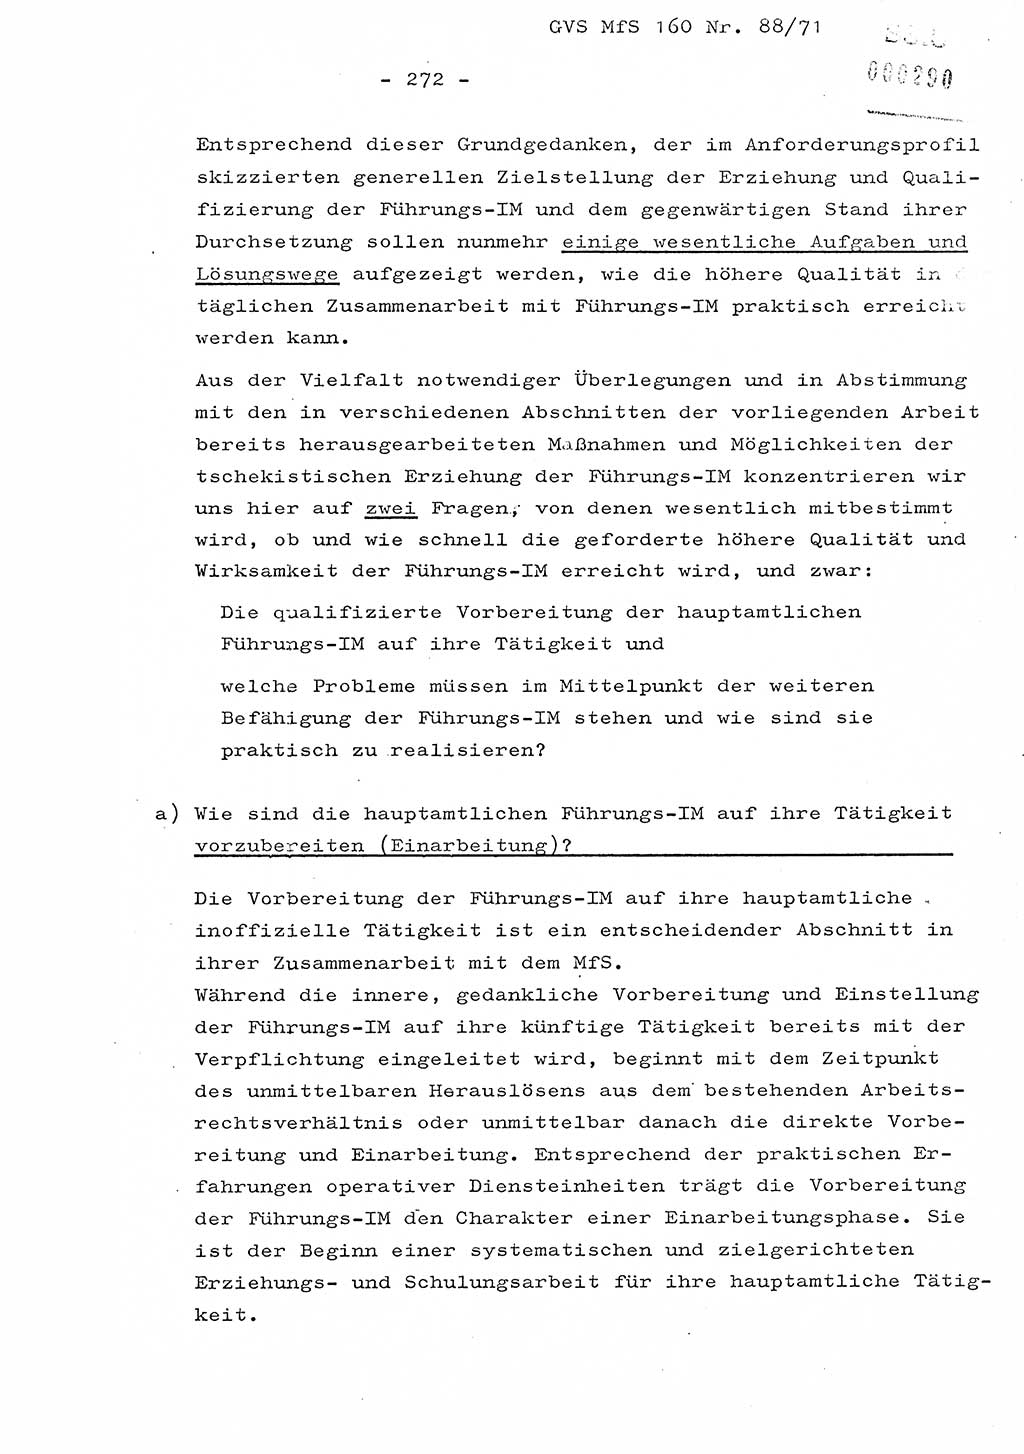 Dissertation Oberstleutnant Josef Schwarz (BV Schwerin), Major Fritz Amm (JHS), Hauptmann Peter Gräßler (JHS), Ministerium für Staatssicherheit (MfS) [Deutsche Demokratische Republik (DDR)], Juristische Hochschule (JHS), Geheime Verschlußsache (GVS) 160-88/71, Potsdam 1972, Seite 272 (Diss. MfS DDR JHS GVS 160-88/71 1972, S. 272)